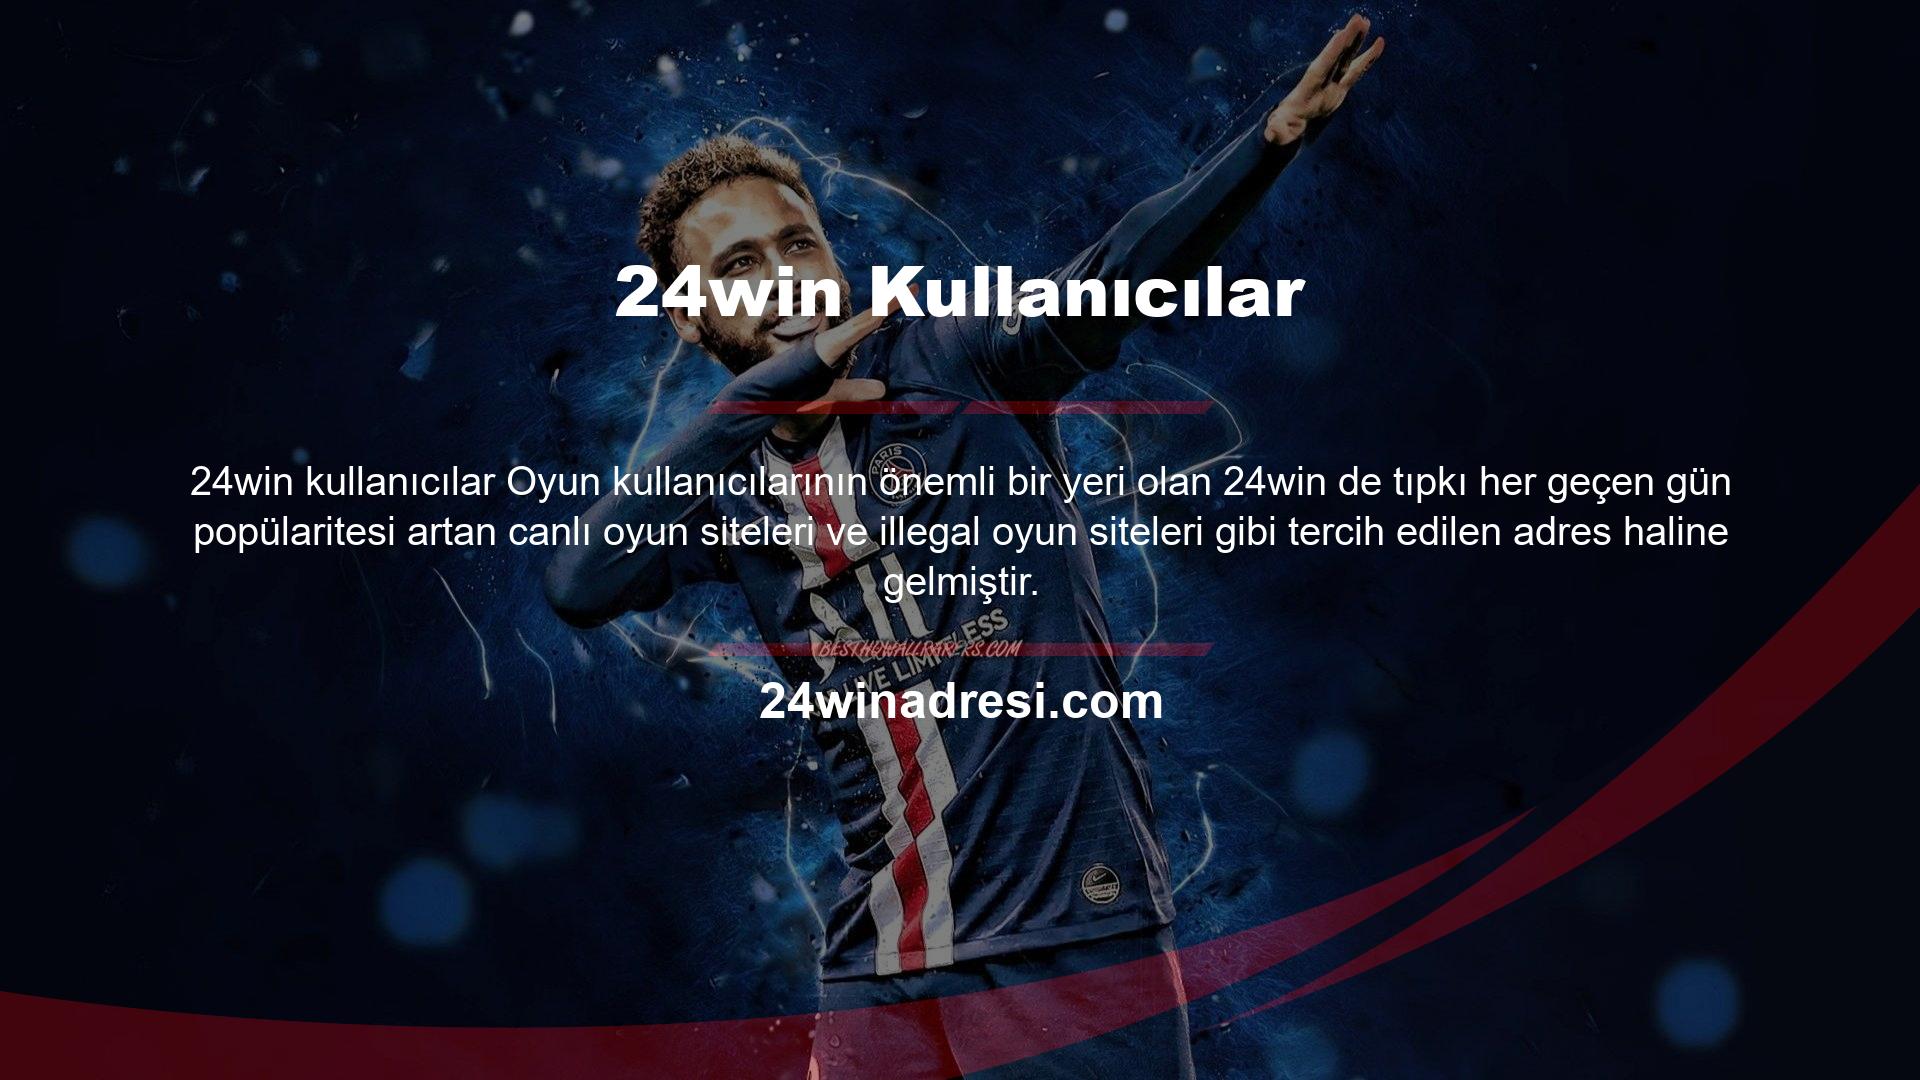 24win giriş adresi ülkemizde genellikle yasa dışı kumar siteleri nedeniyle yasal olarak engellenmektedir